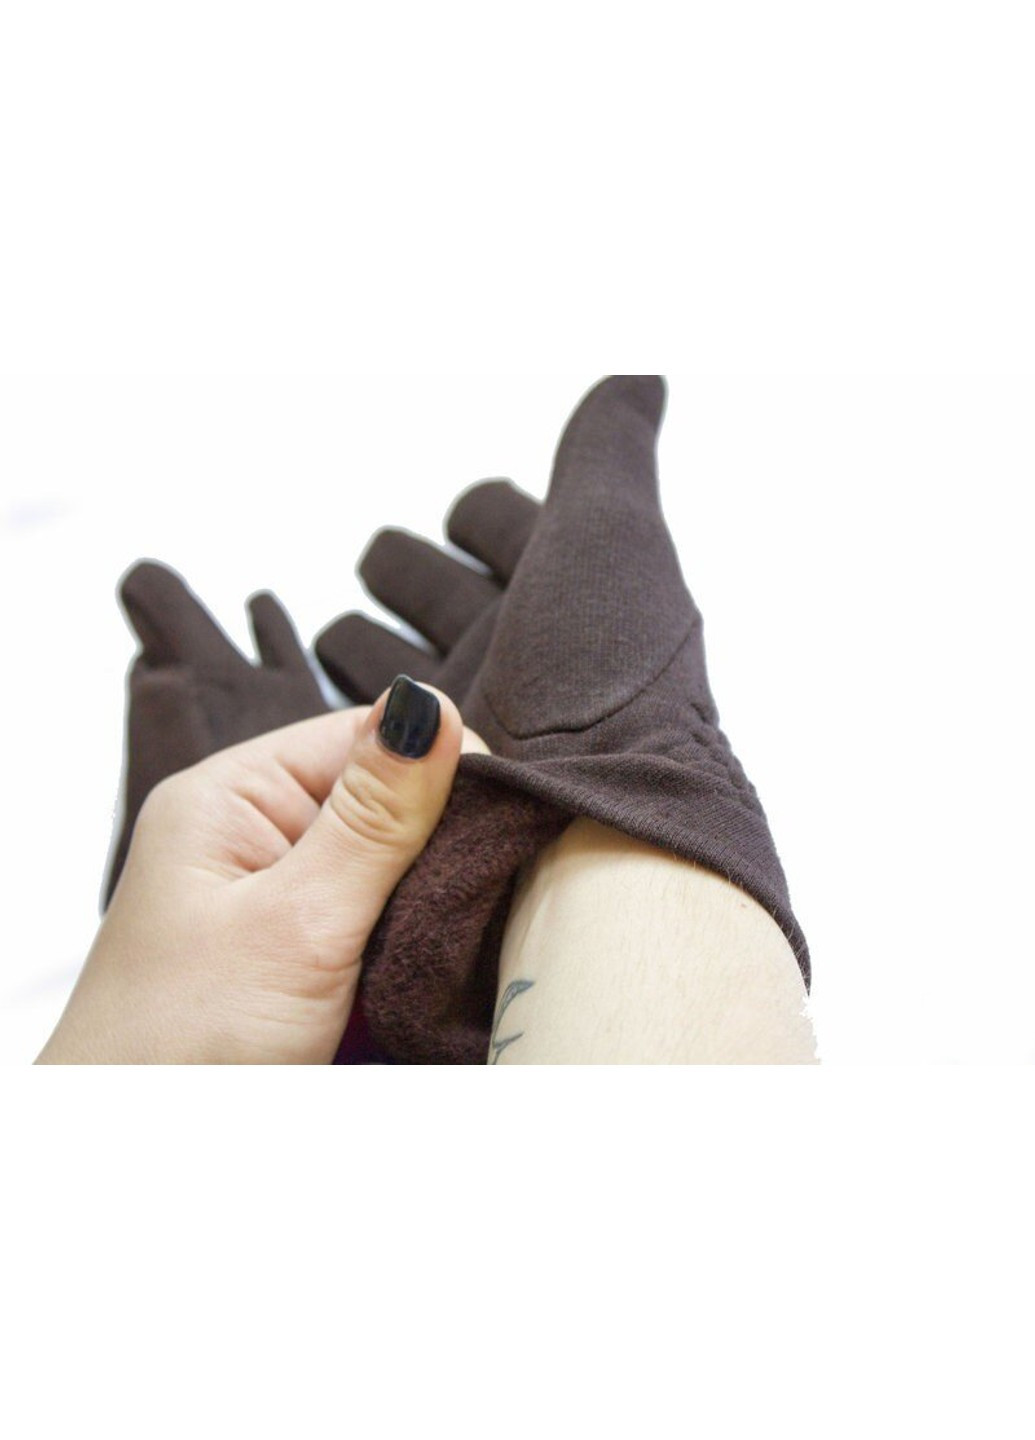 7,5-8 - Жіночі тканинні рукавички 123 BR-S (261486876)